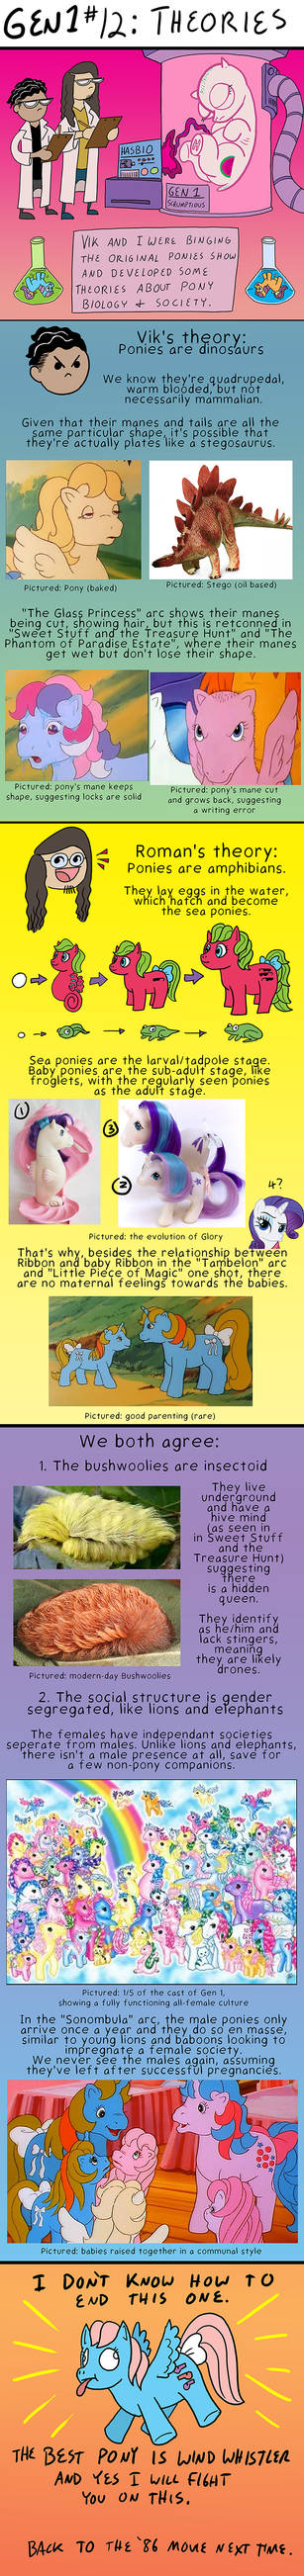 Gen1 Ponies 1986 #12 - Theories